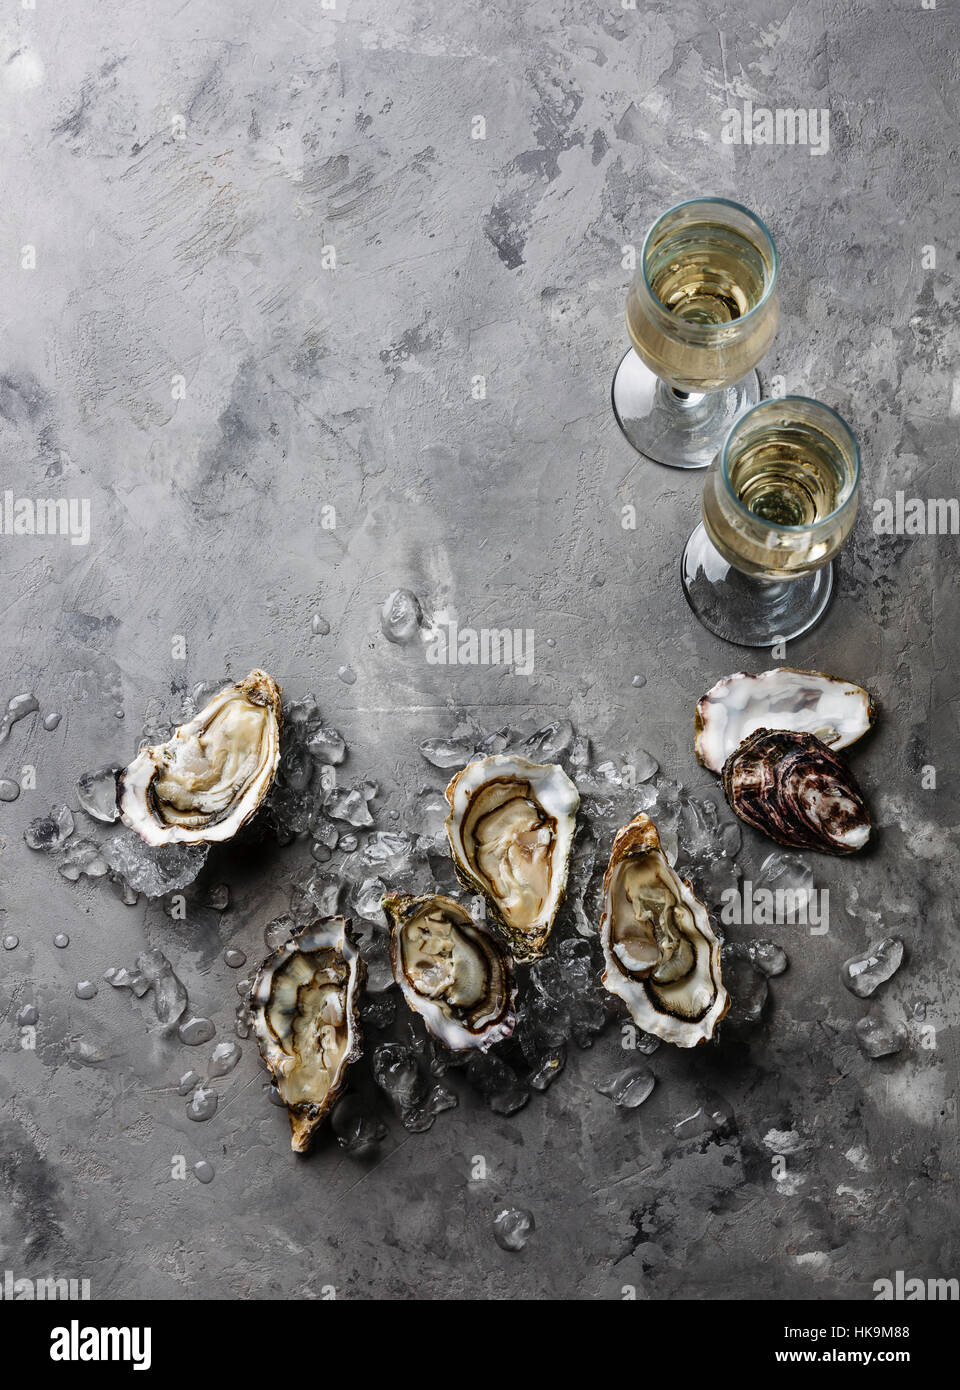 Abrir las ostras y champagne en la textura del fondo de cemento gris espacio de copia Foto de stock